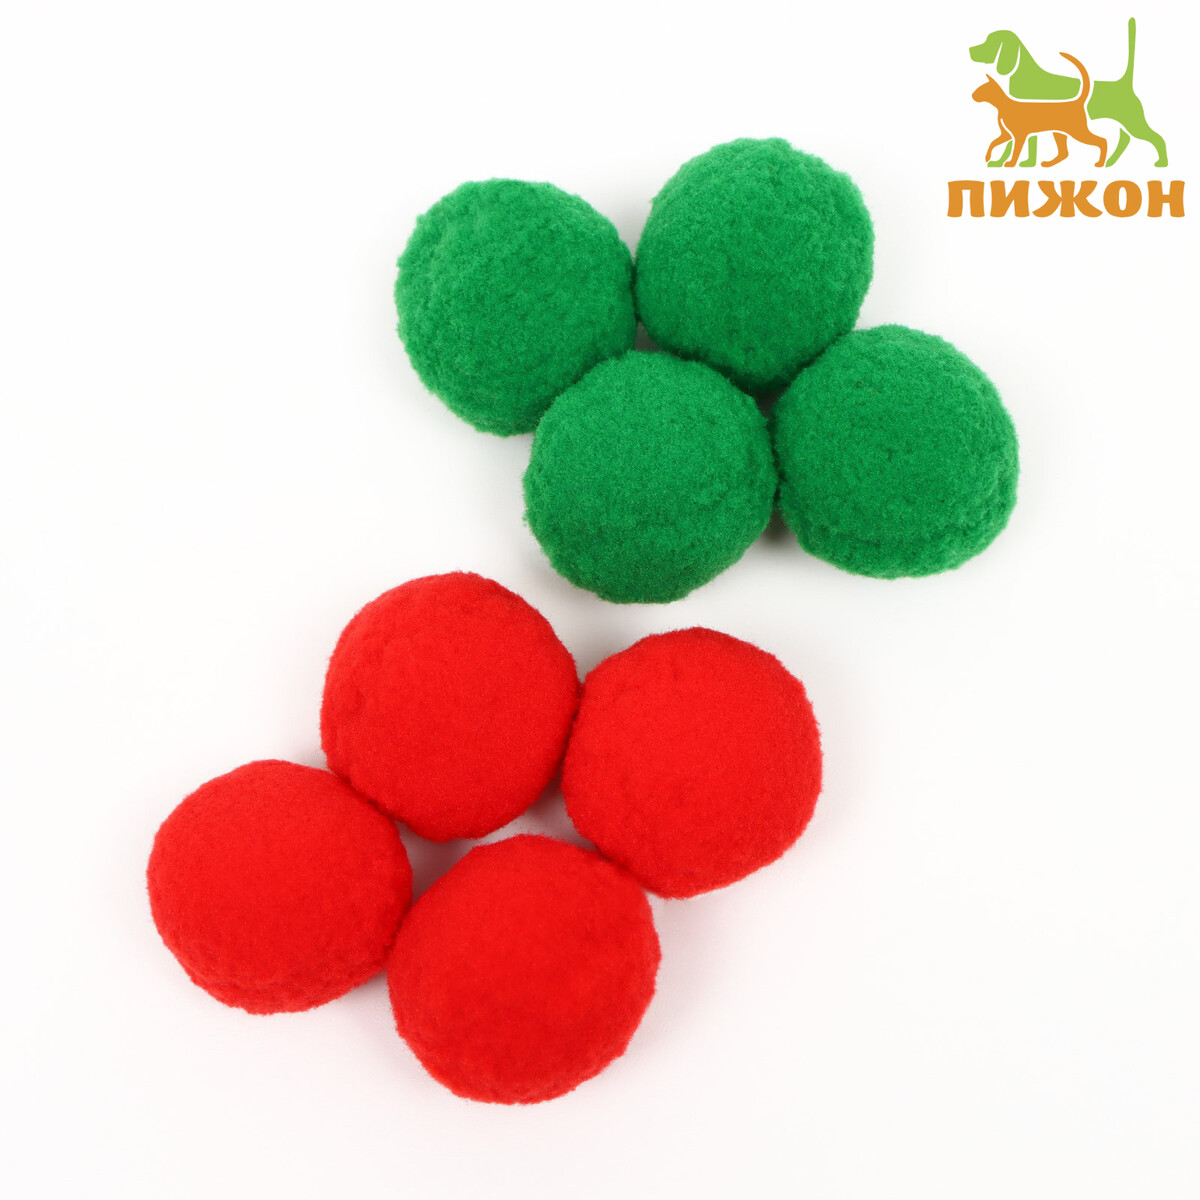 Набор плюшевых шариков для кошек, 8 шт, зеленый/красный набор для творчества аппликация из ярких шариков котенок с3307 02